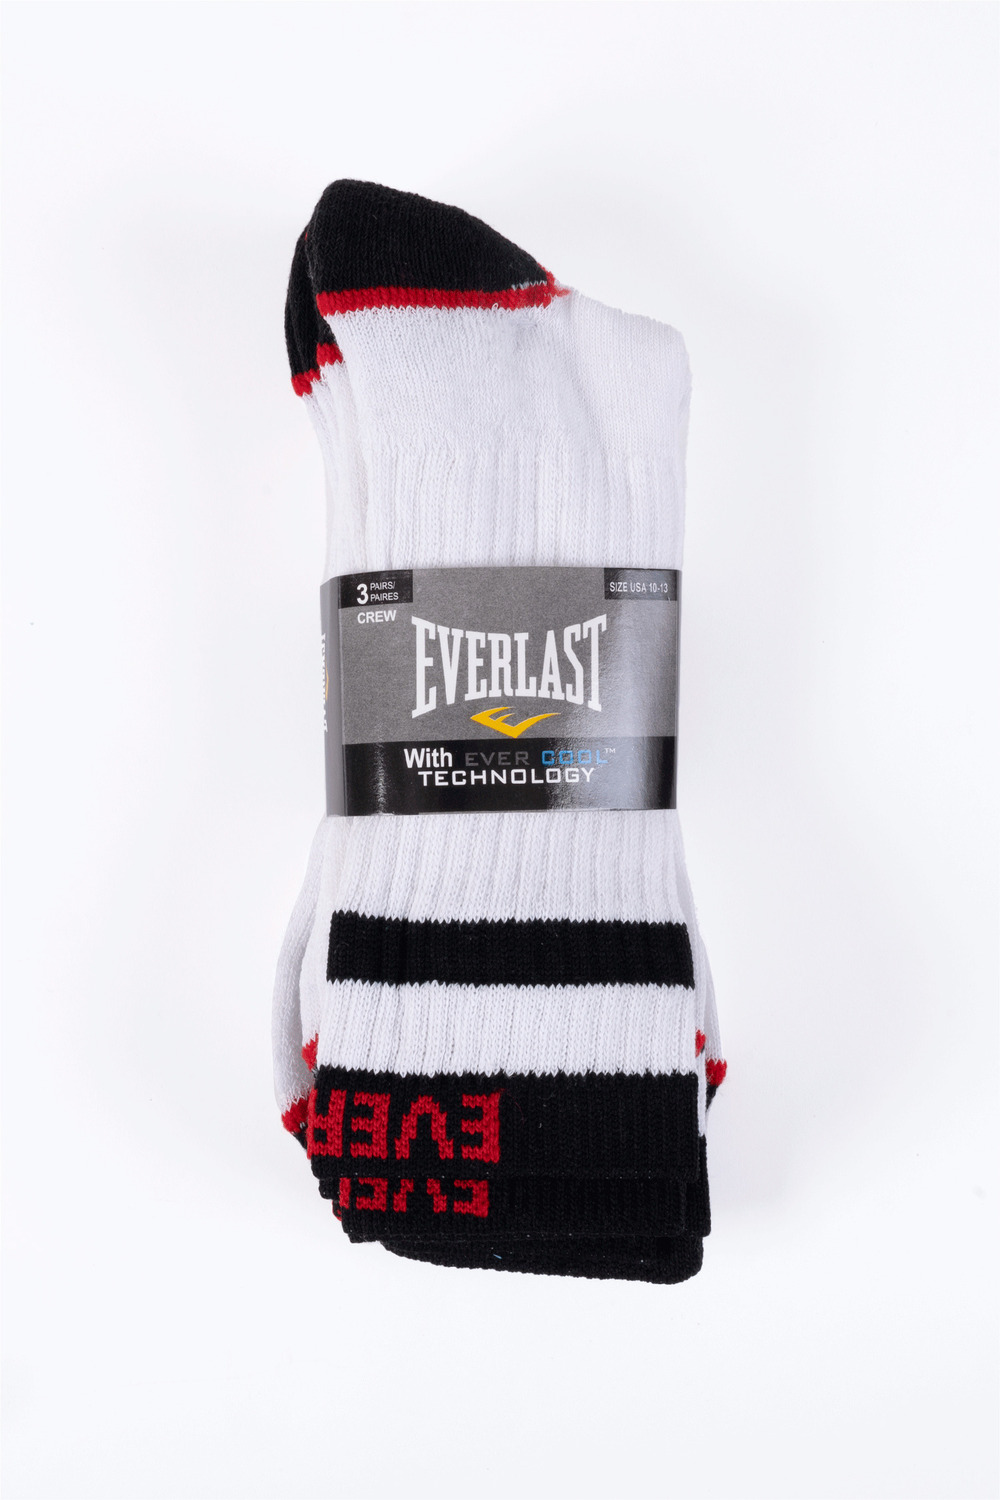 Everlast - Chaussettes de sport pour hommes, 3 paires